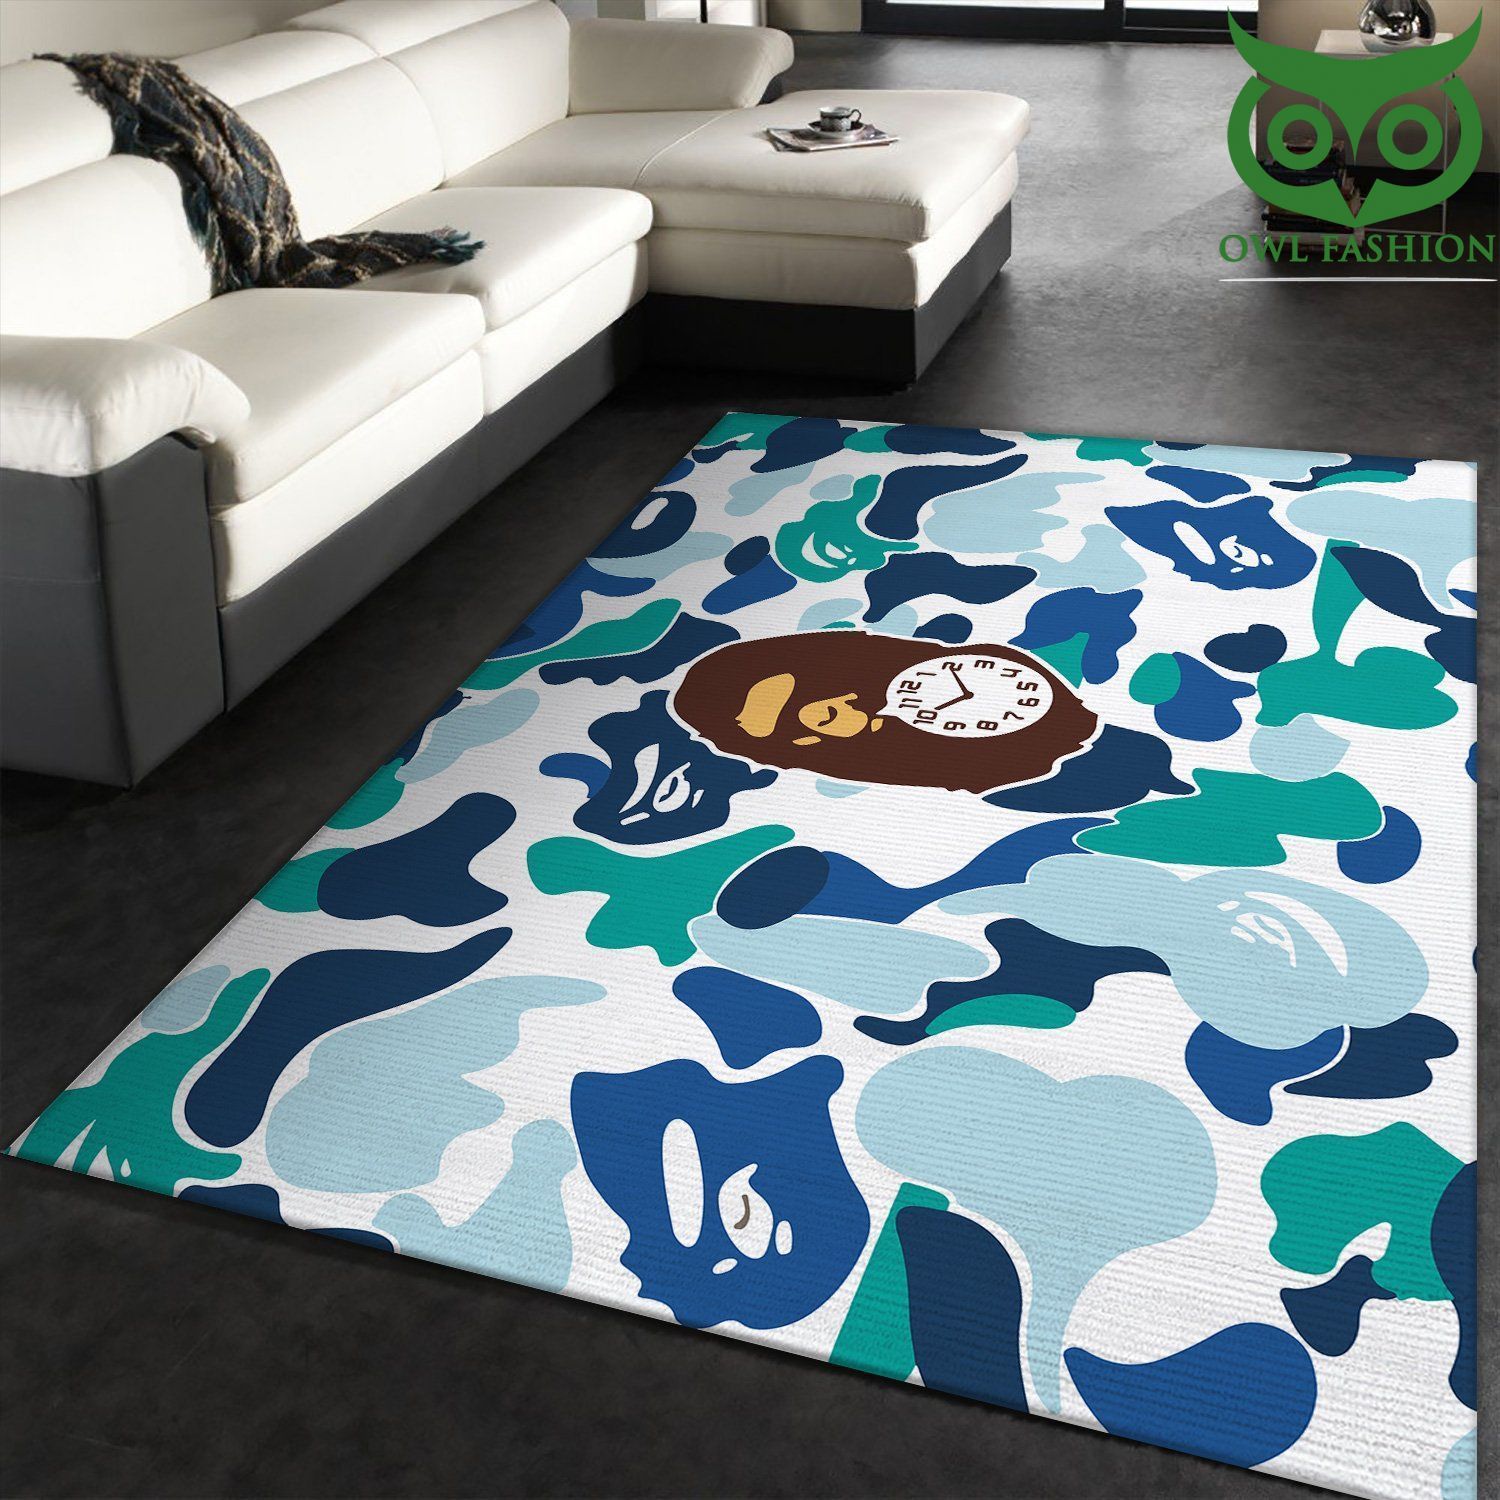 Bape Fashion Brand Camouflage Monkey decoration Carpet rug